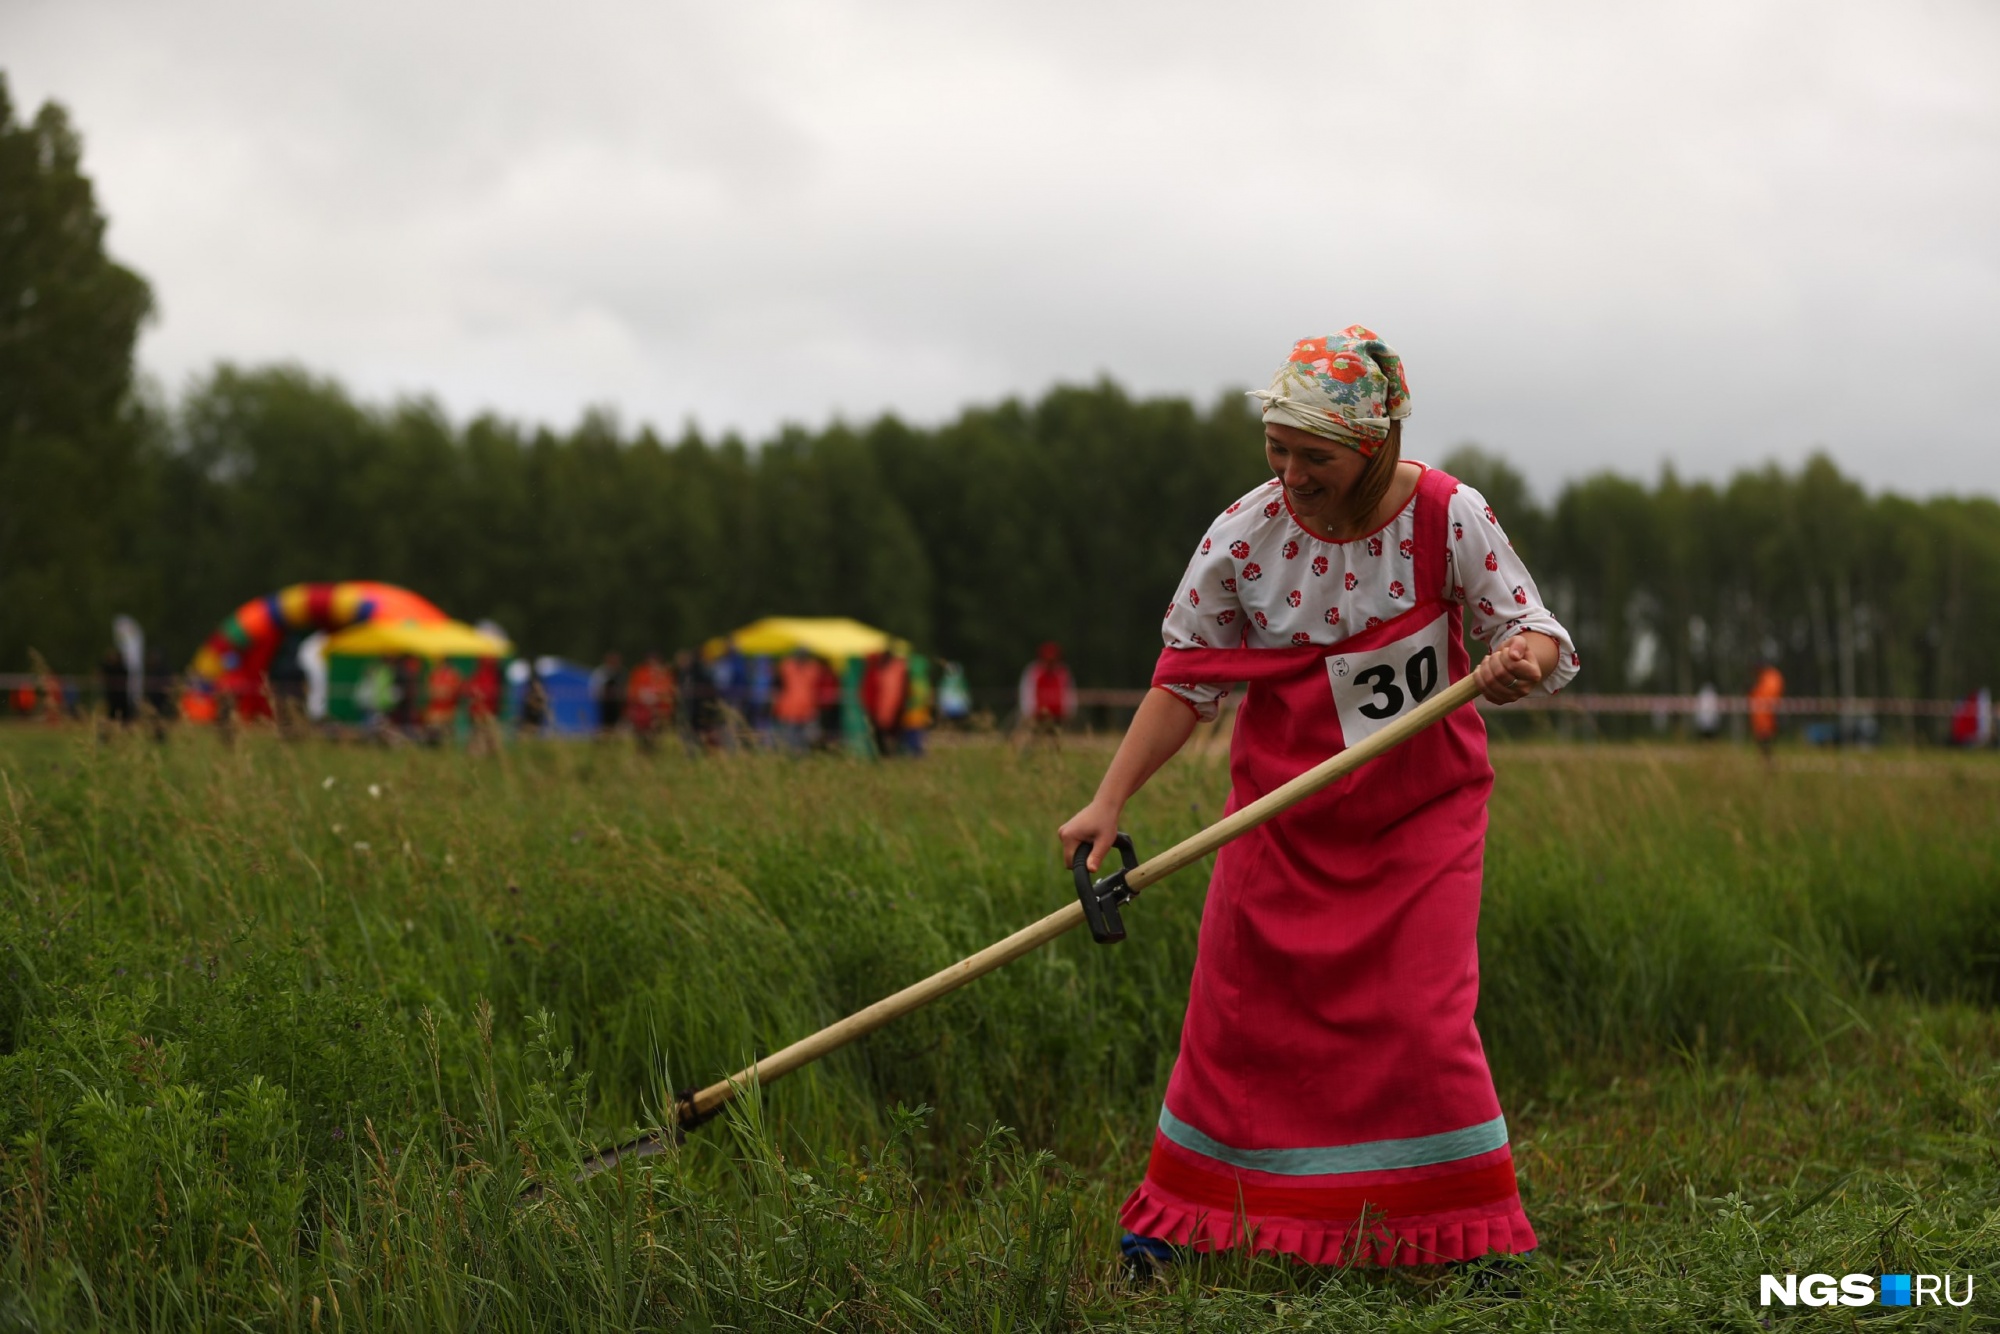 Начались сельские игры в Куйбышеве — смотрим на соревнования косарей, дояров и трактористов